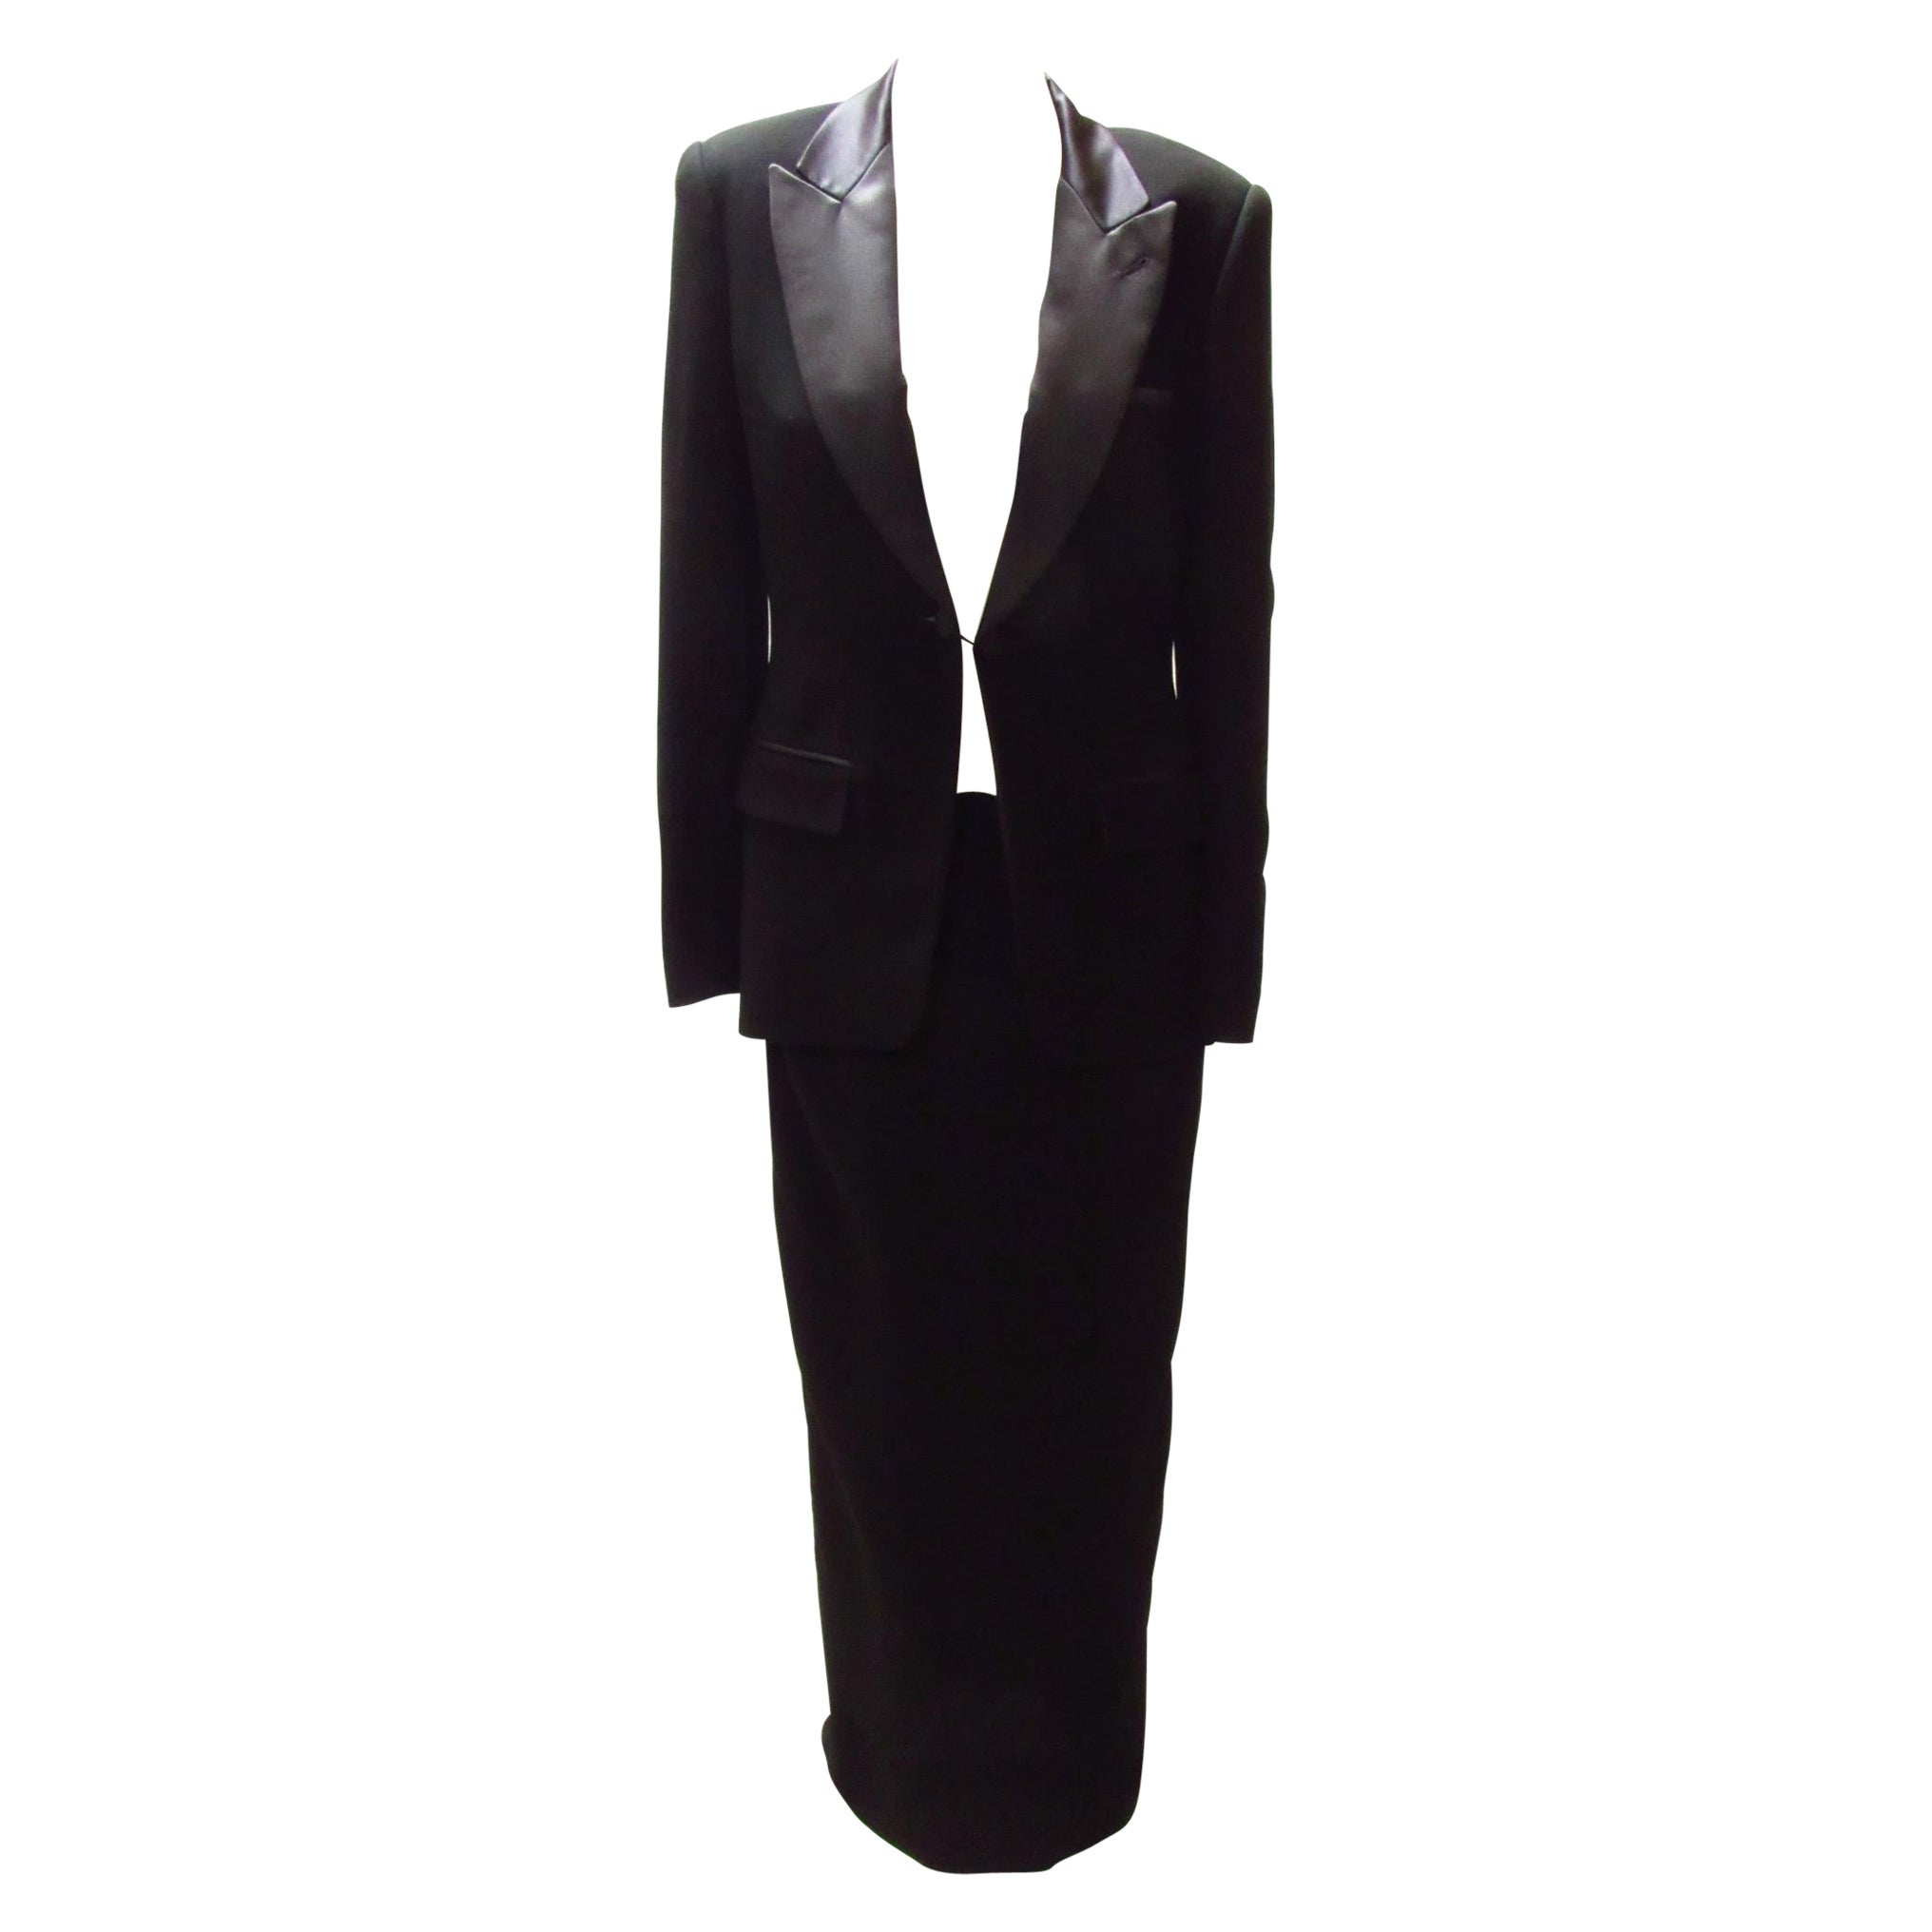 Jean Paul Gaultier Classique Black Tuxedo Dress